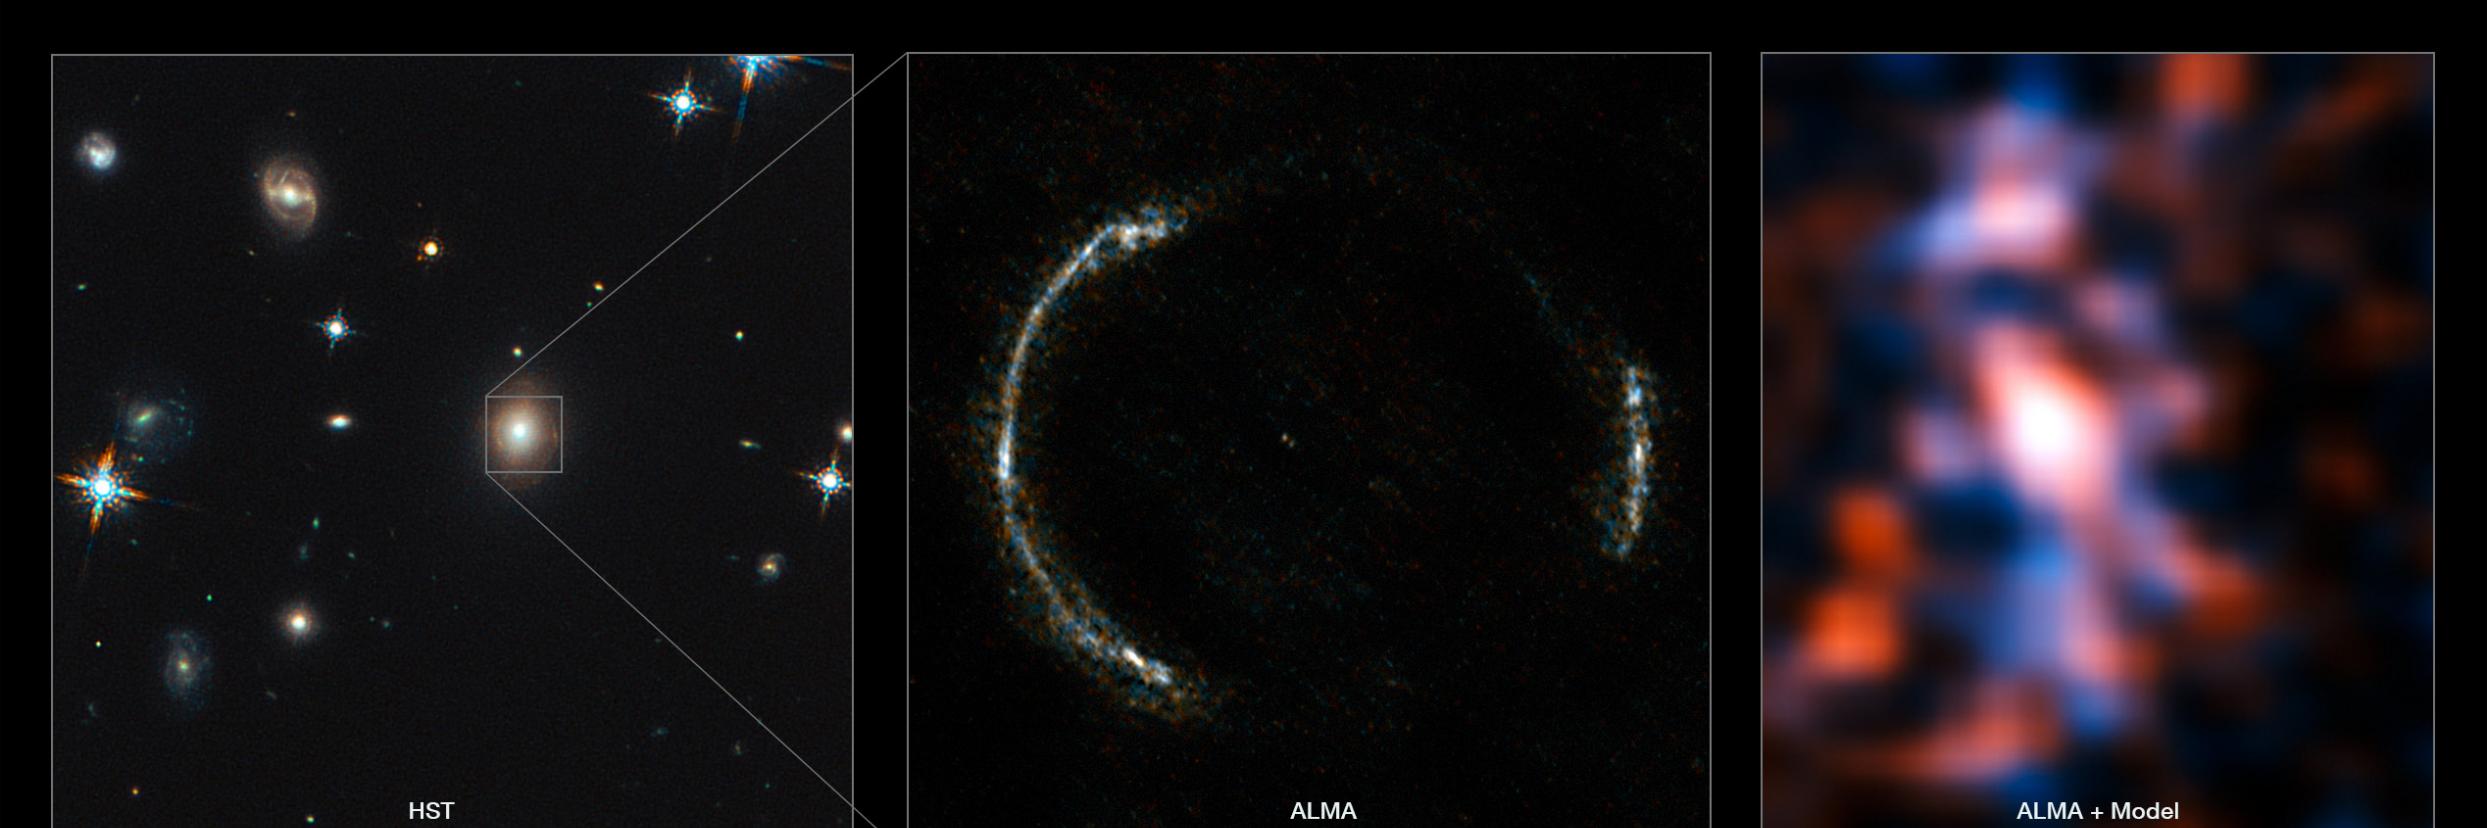 天文学家利用引力透镜观测到遥远星系SDP.81的恒星形成区域